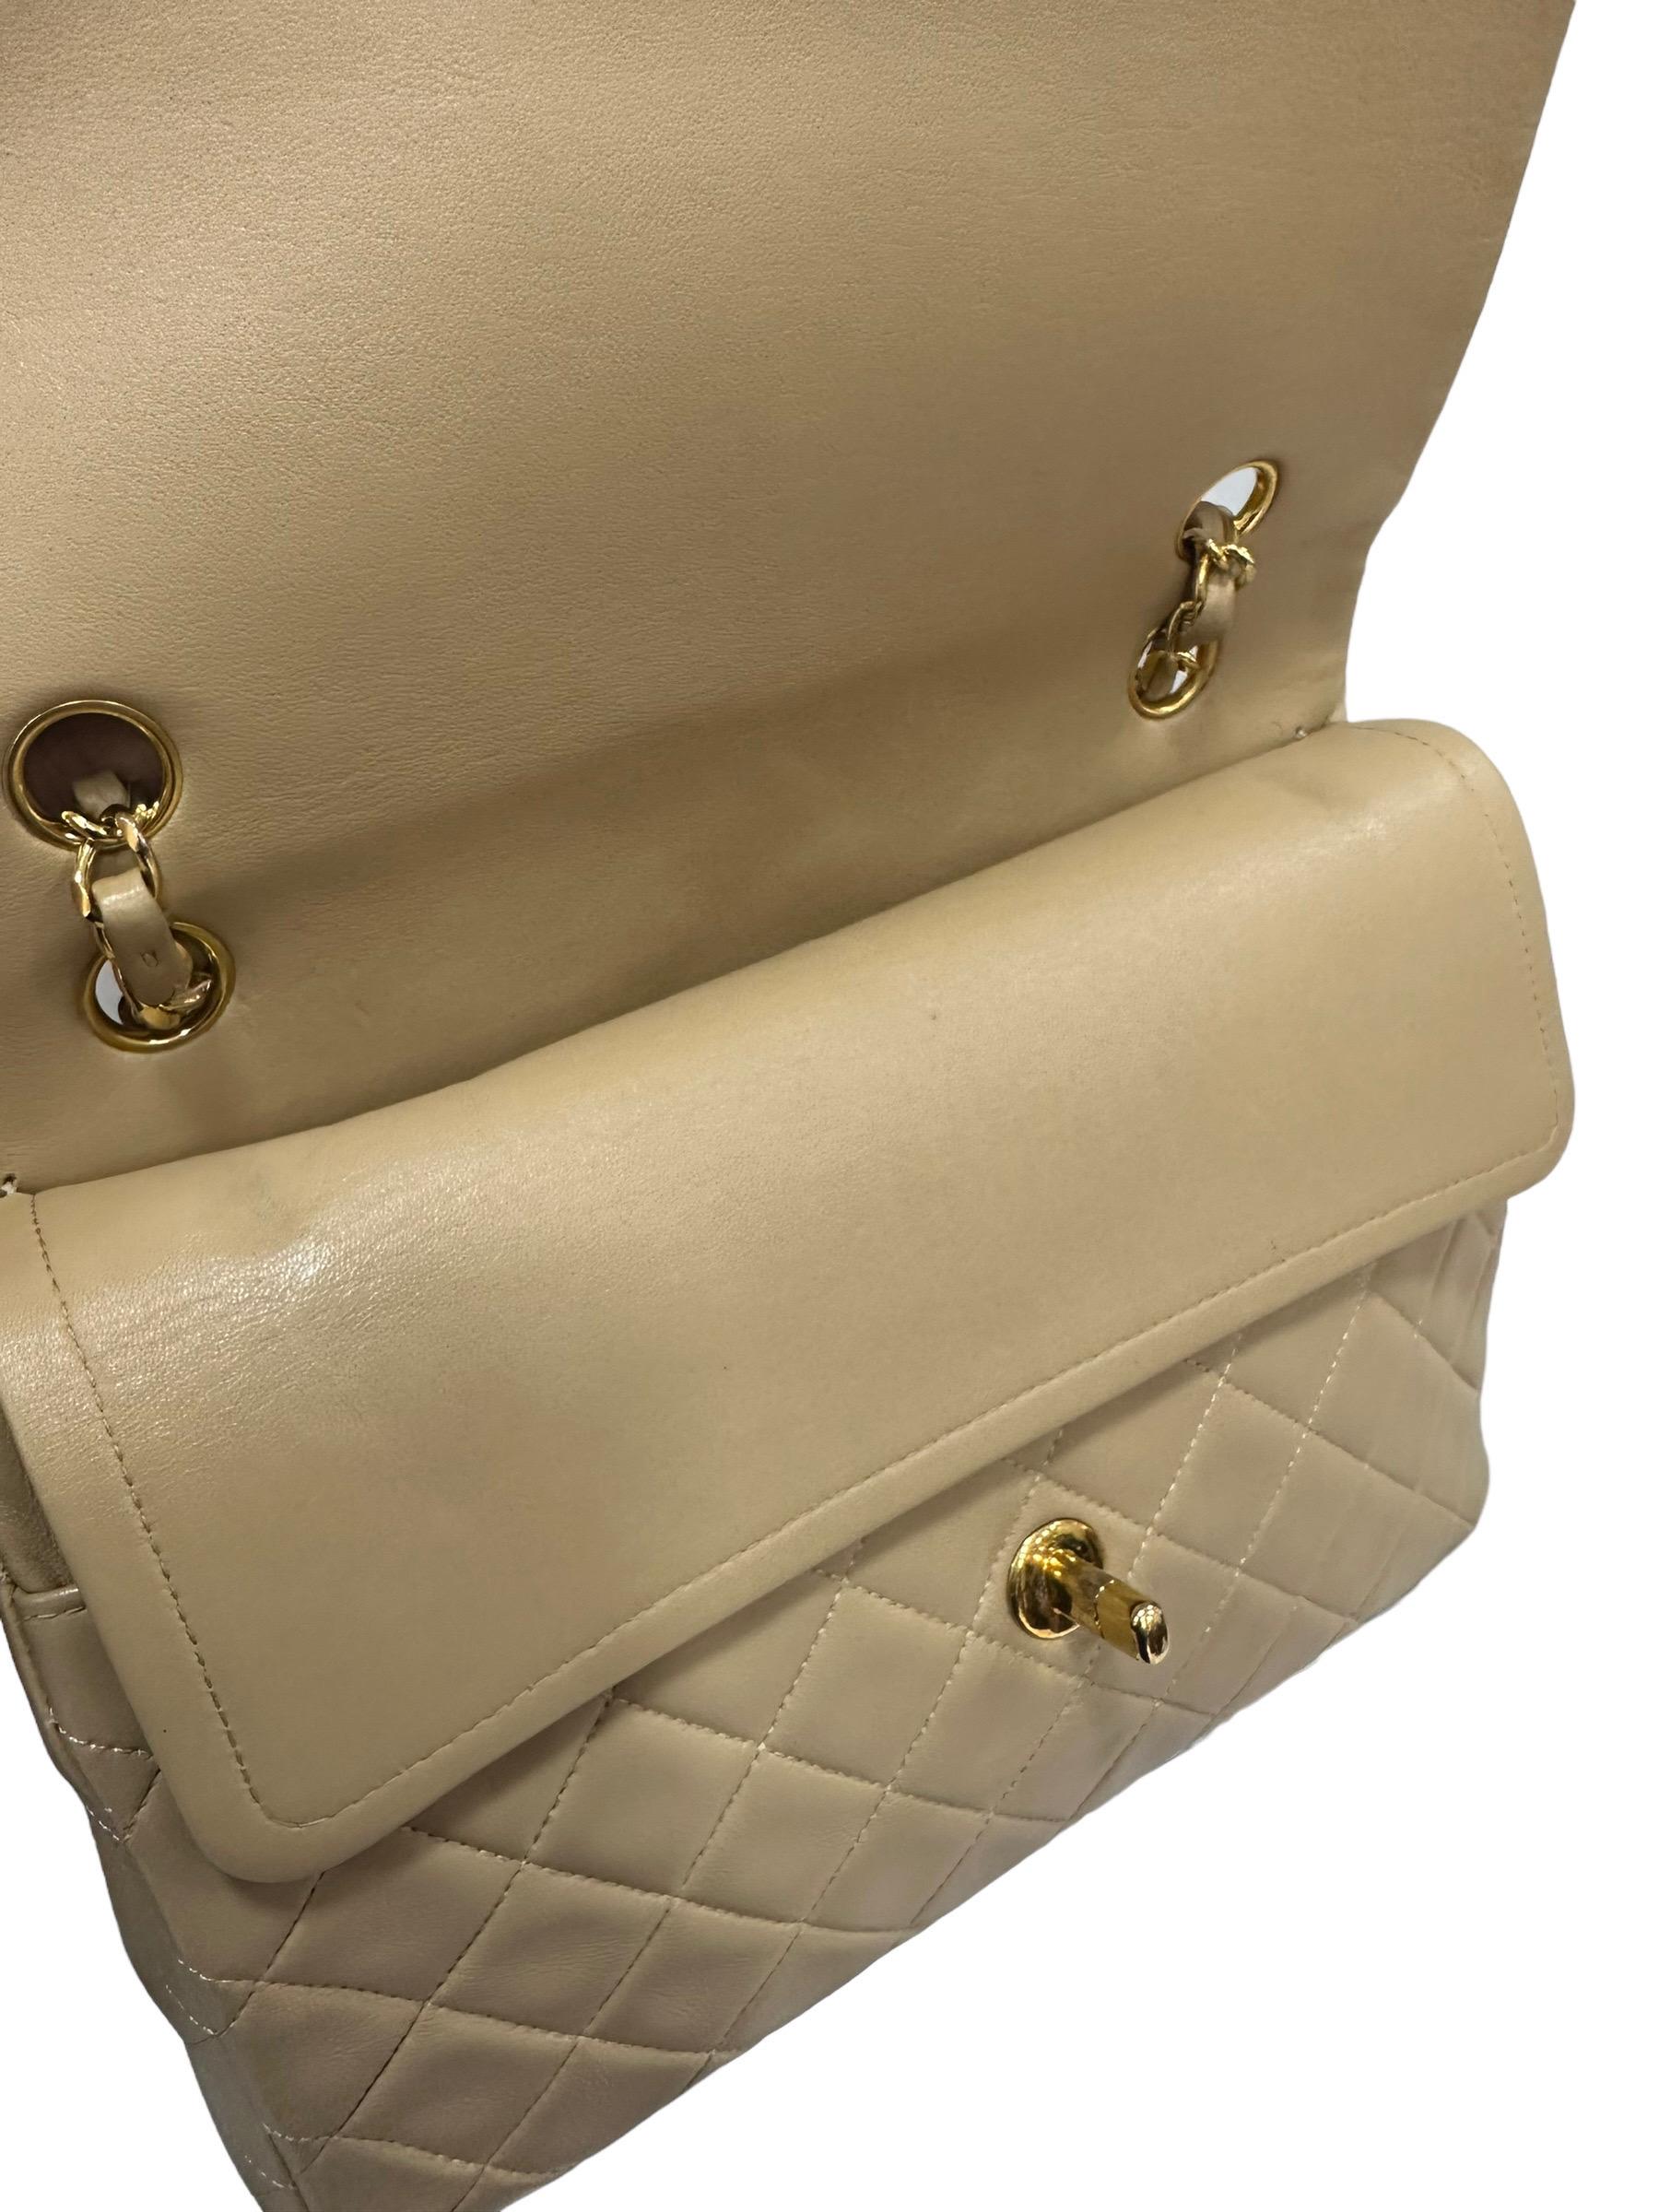 ‘90 Chanel Flap Vintage Beige Leather Shoulder Bag For Sale 11